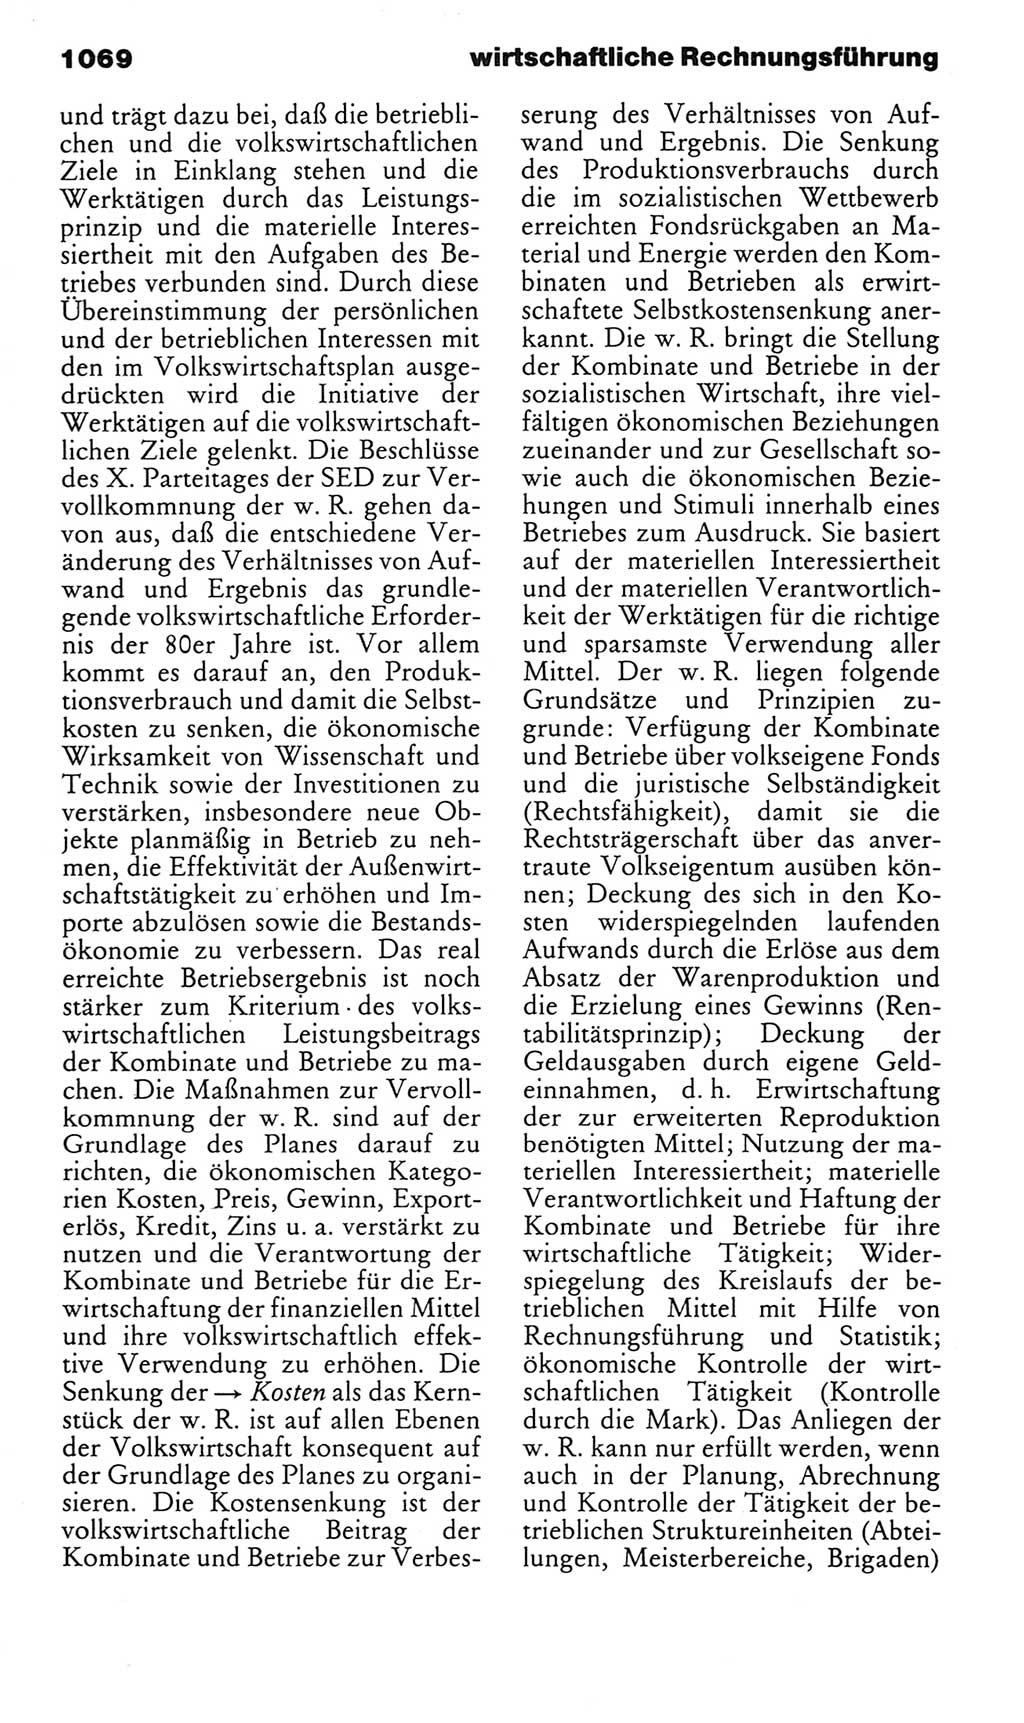 Kleines politisches Wörterbuch [Deutsche Demokratische Republik (DDR)] 1983, Seite 1069 (Kl. pol. Wb. DDR 1983, S. 1069)